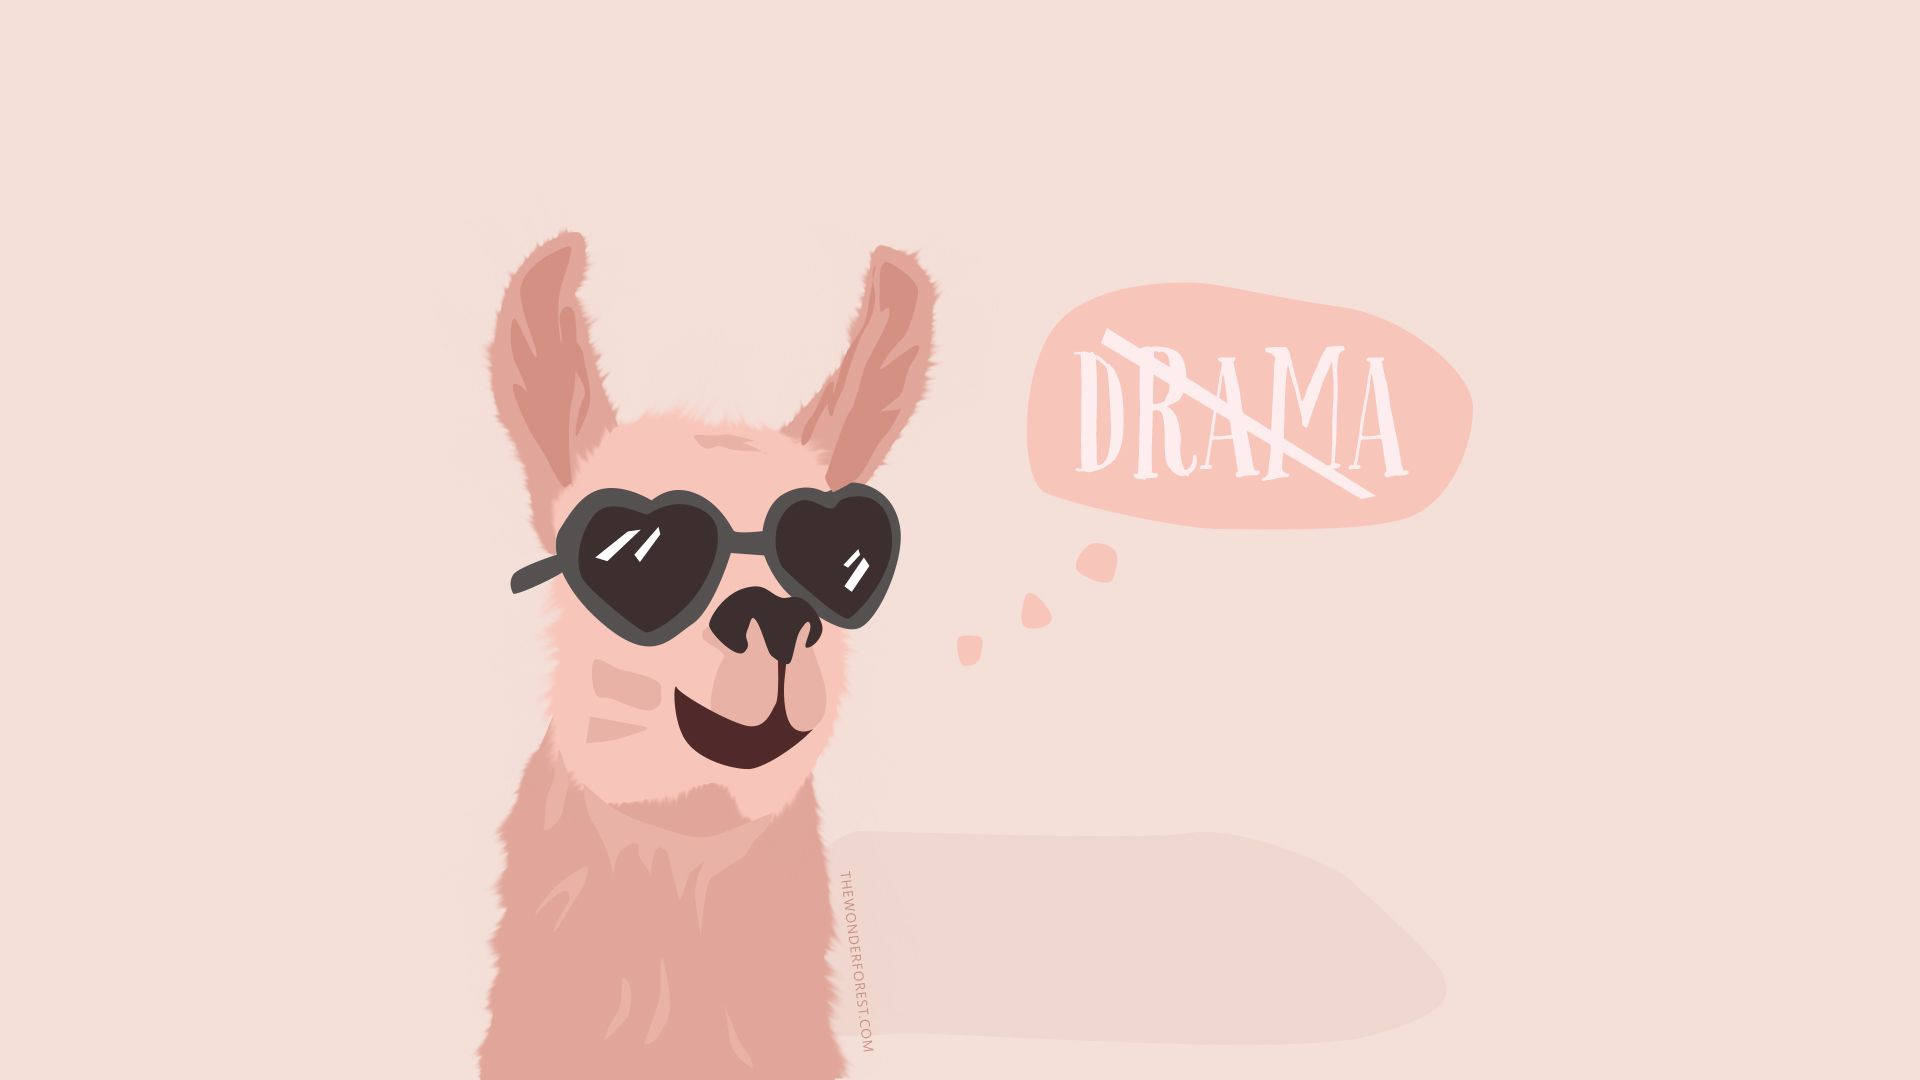 No Drama Llama Wallpaper